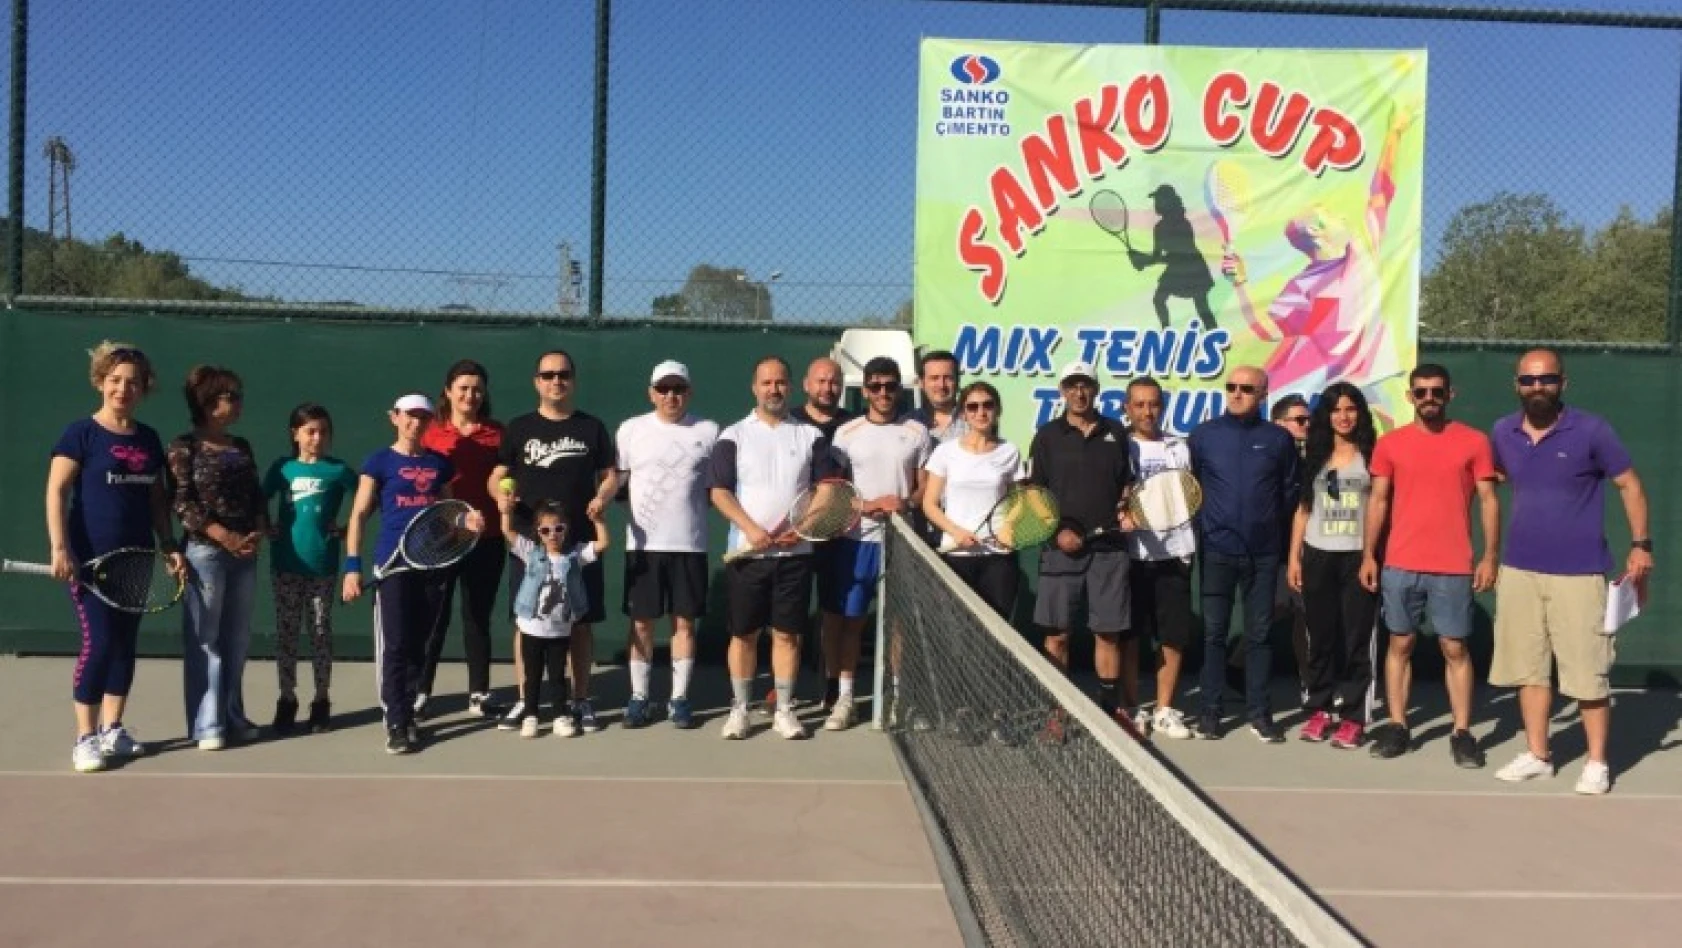 Sanko Cup Mix Kaynaşma Turnuvası başladı